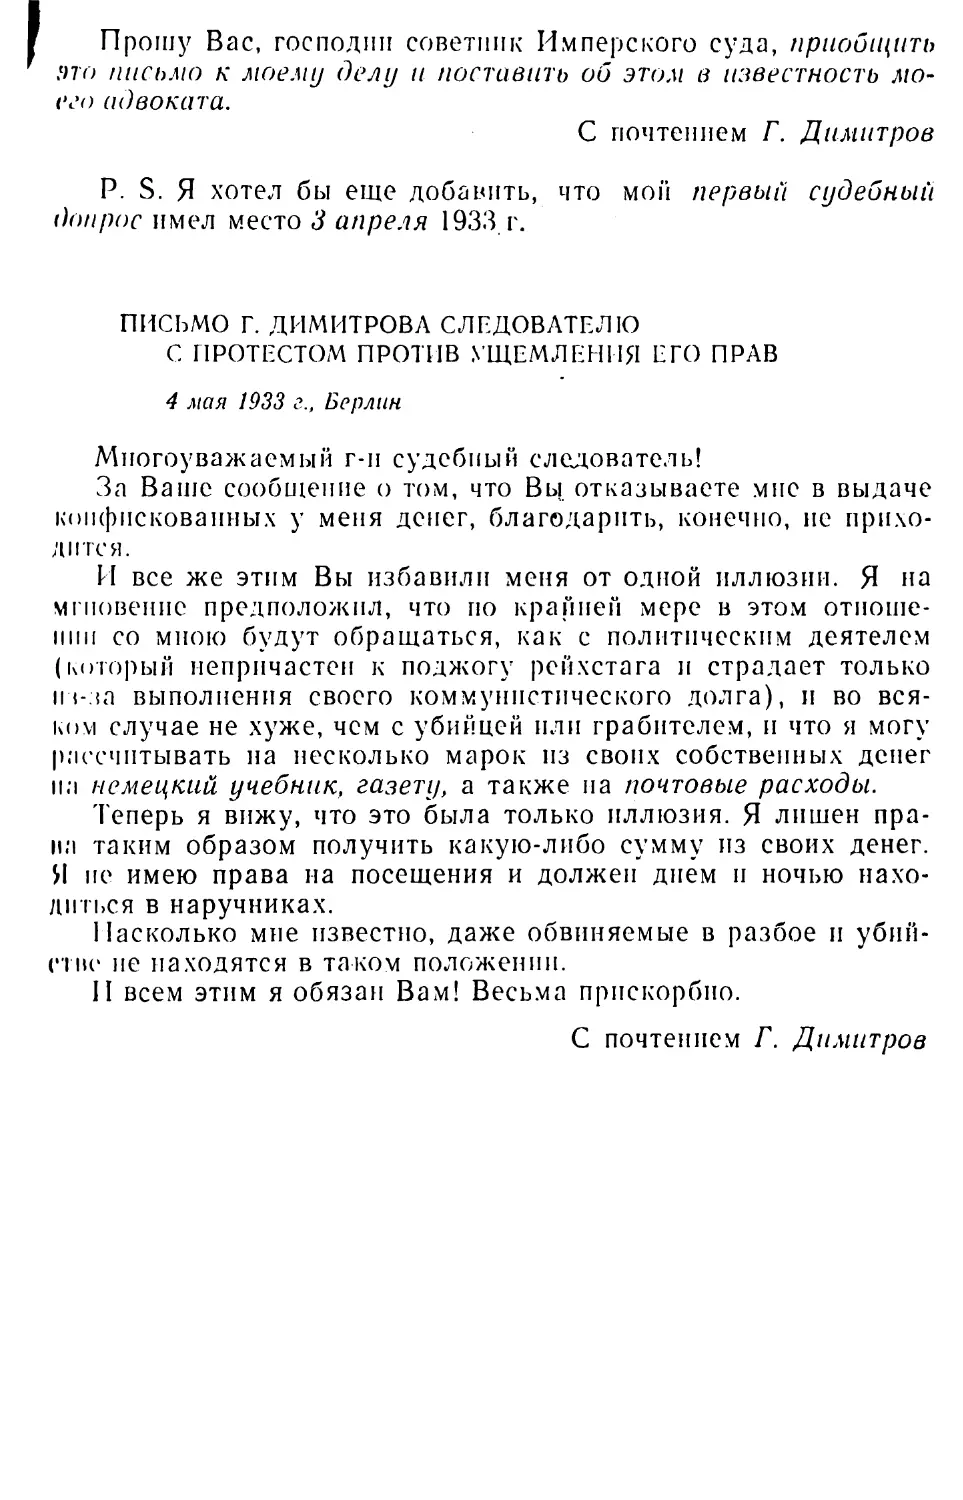 Письмо Г. Димитрова следователю с протестом против ущемления его прав. 4 мая 1933 г